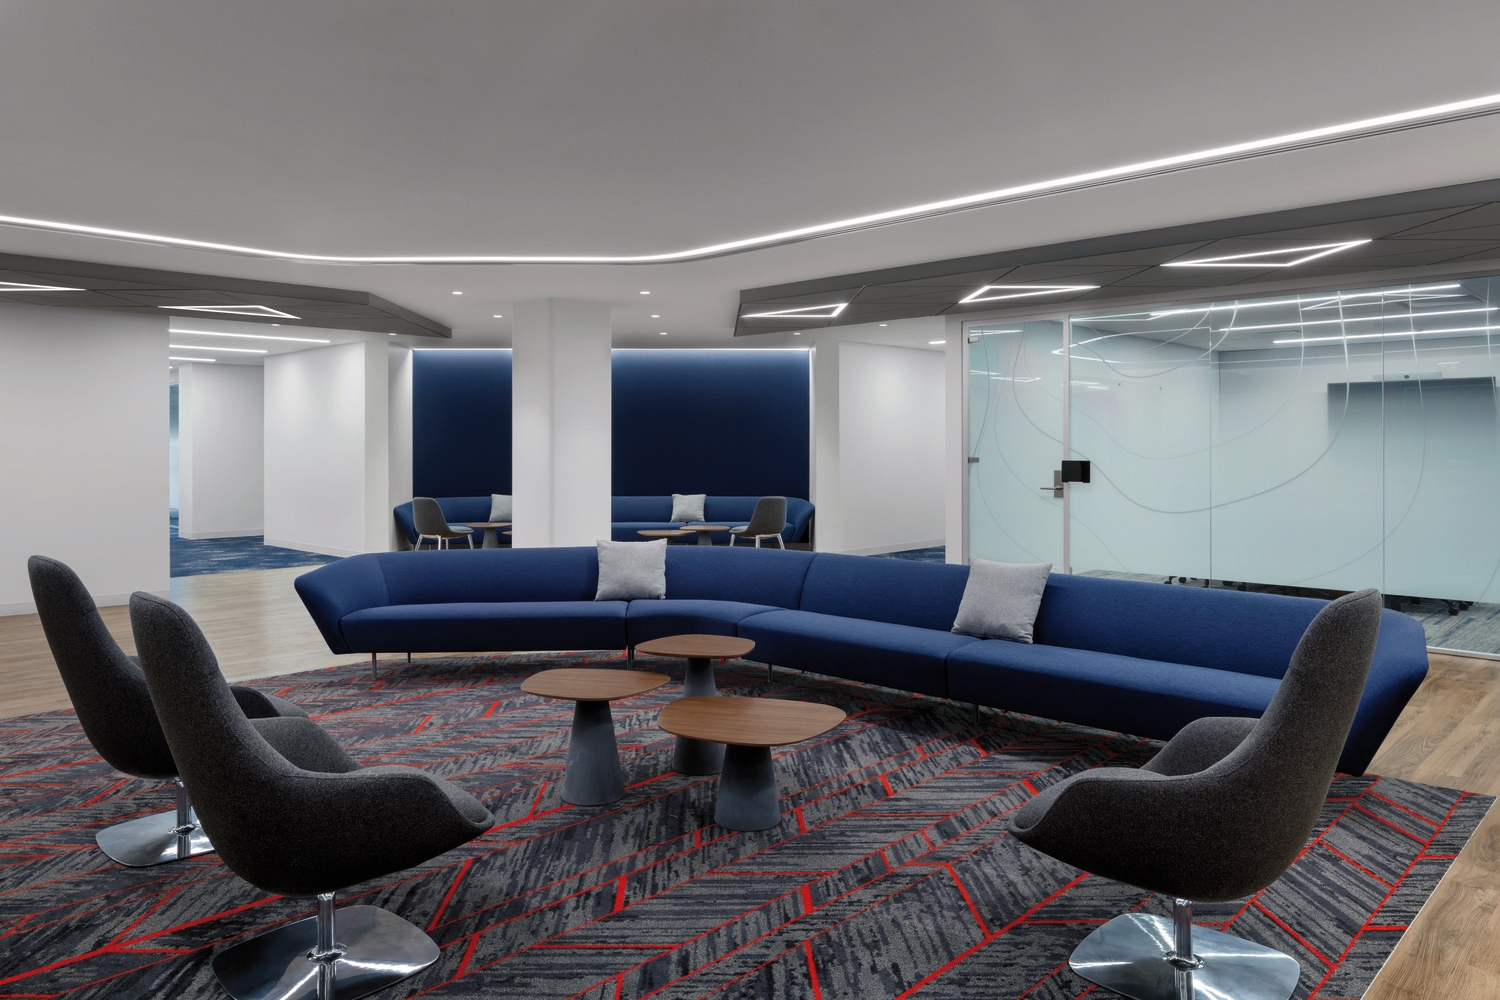 【Everest Reinsuranceのオフィスデザイン】- ニュージャージー州ウォーレンのオープンスペース